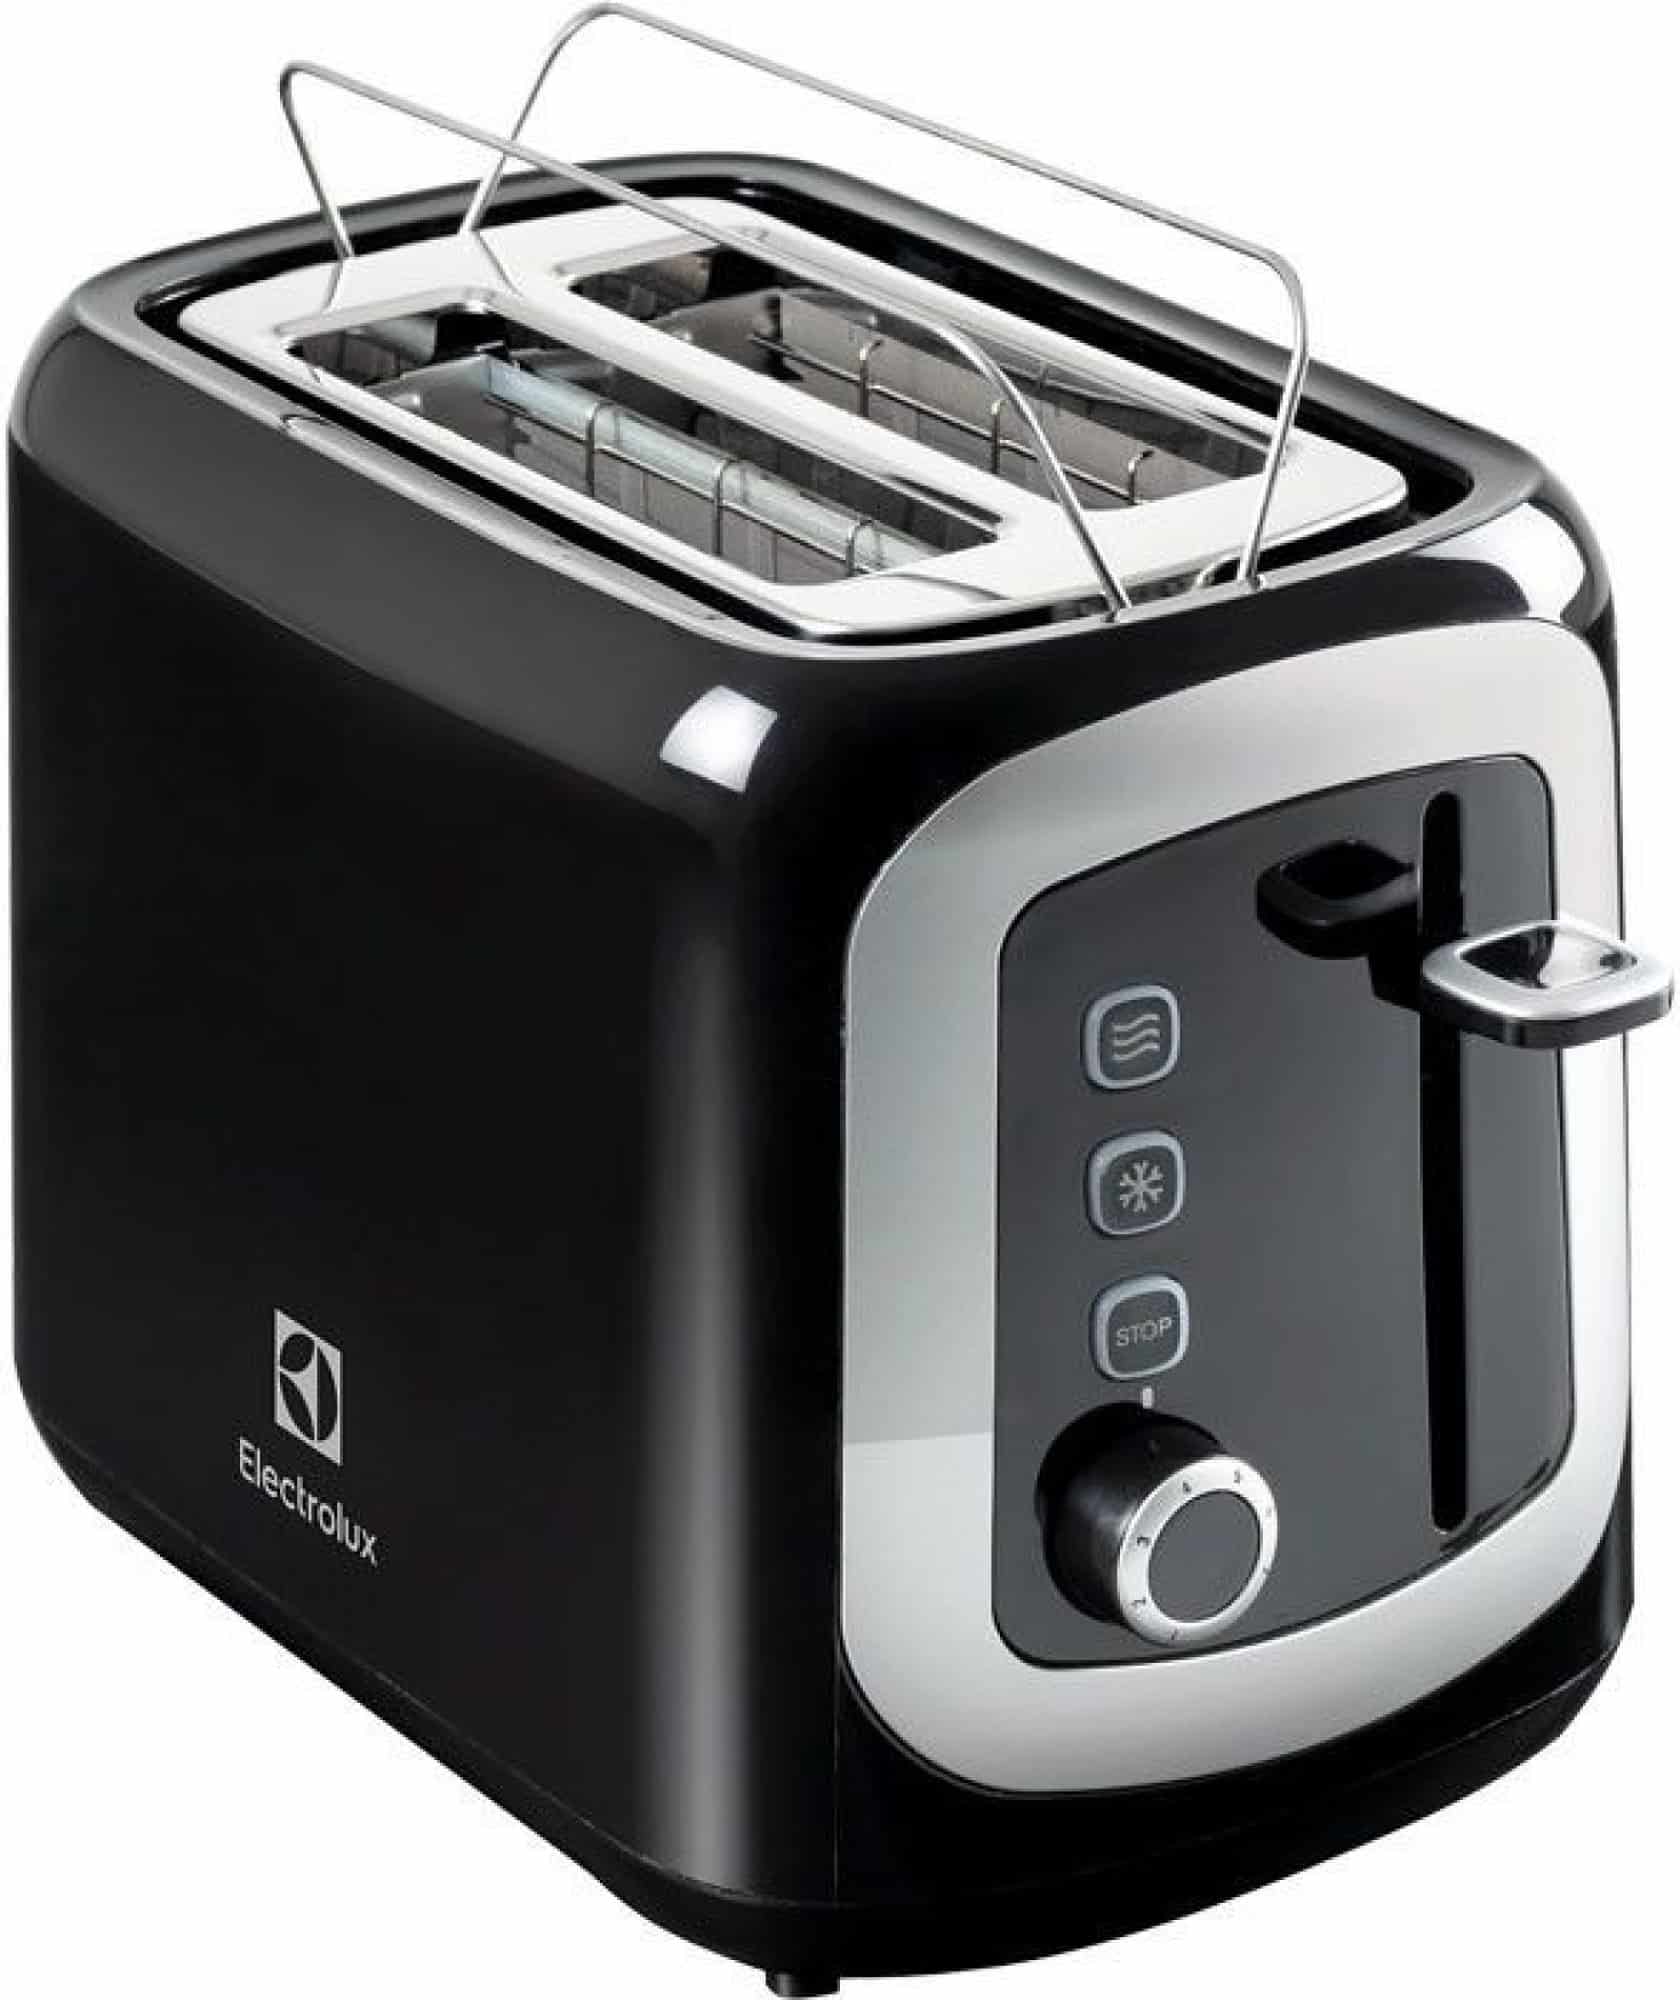 Praktický opékač toastů značky Elektrolux v moderním provedení.